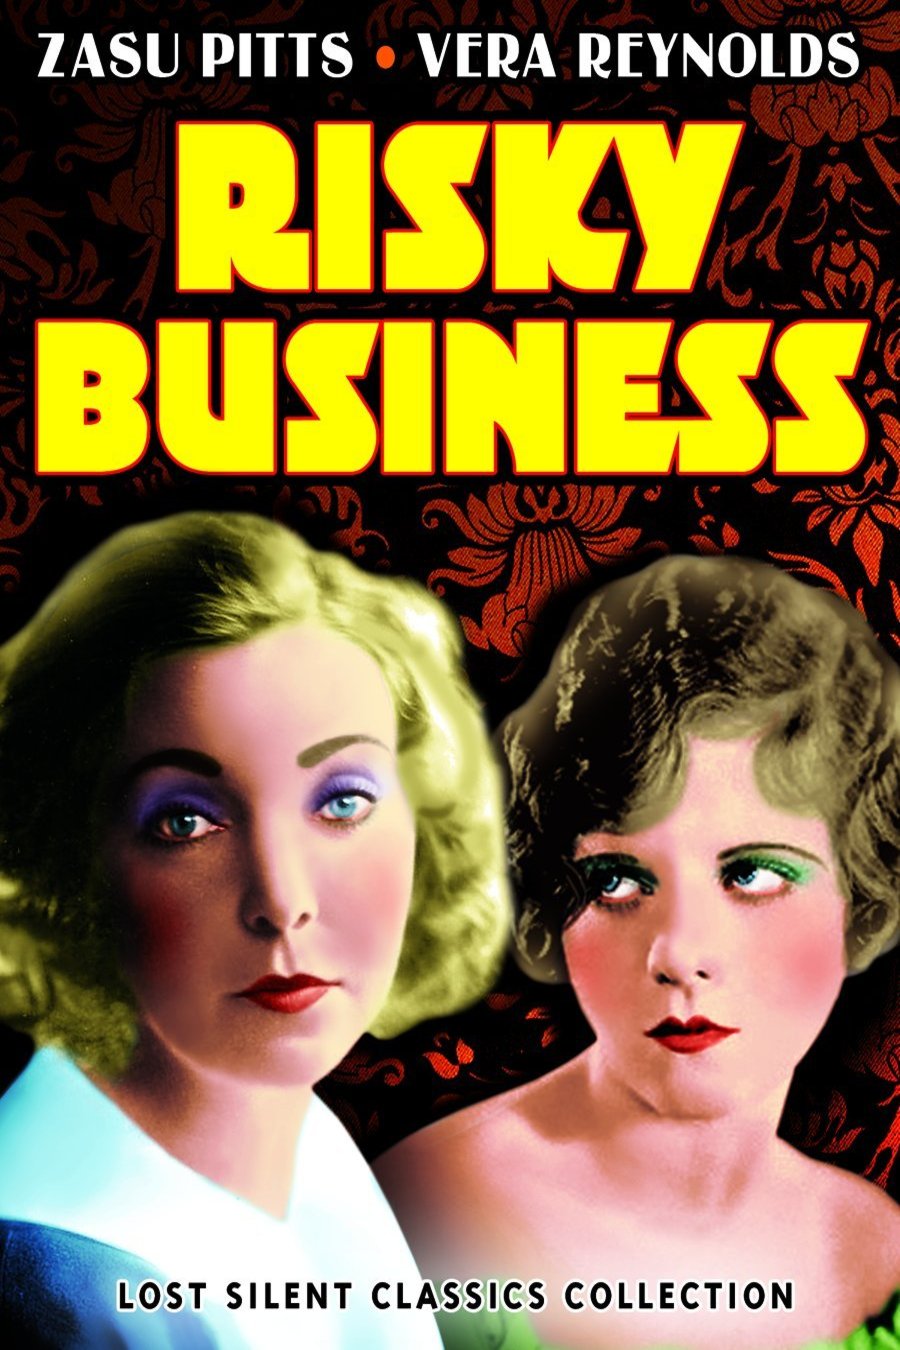 L'affiche du film Risky Business